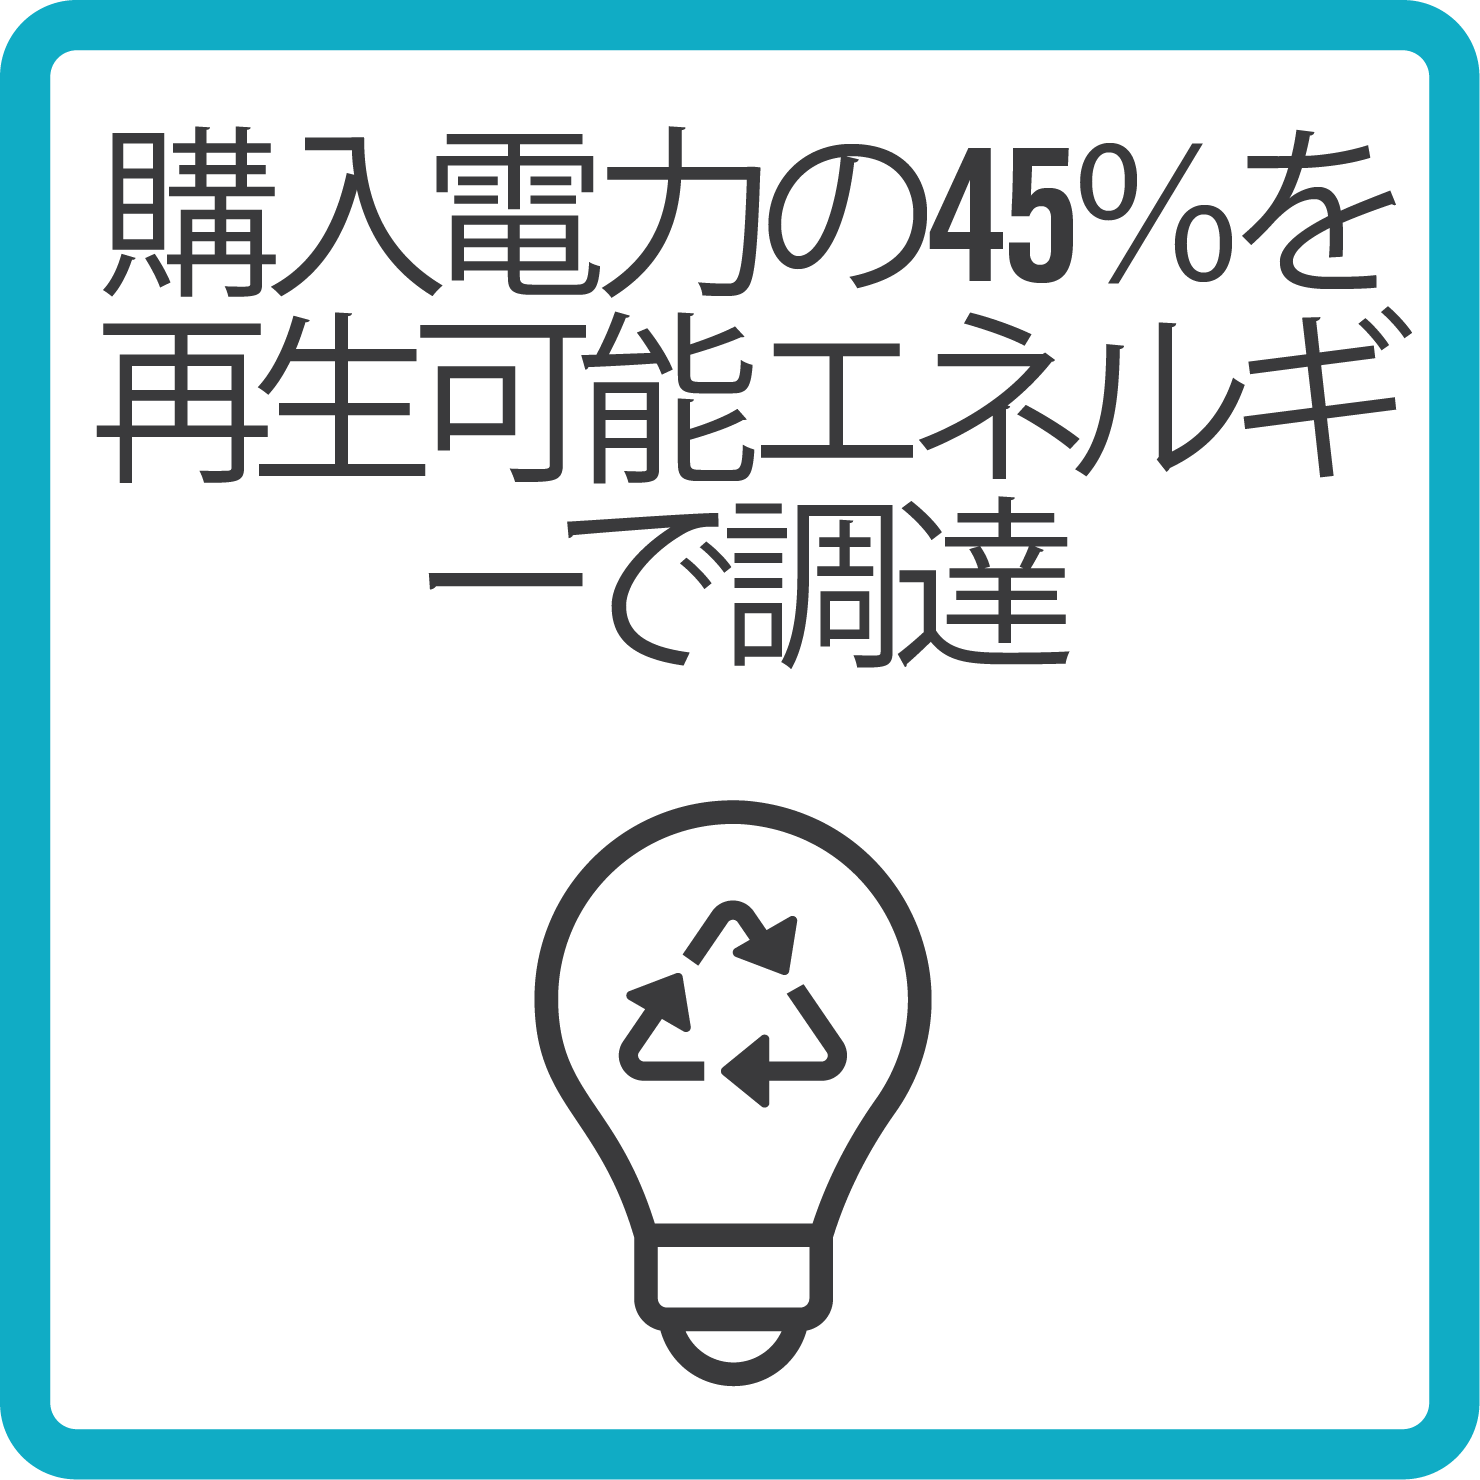 Sustainability renewable electricity_B_japanese